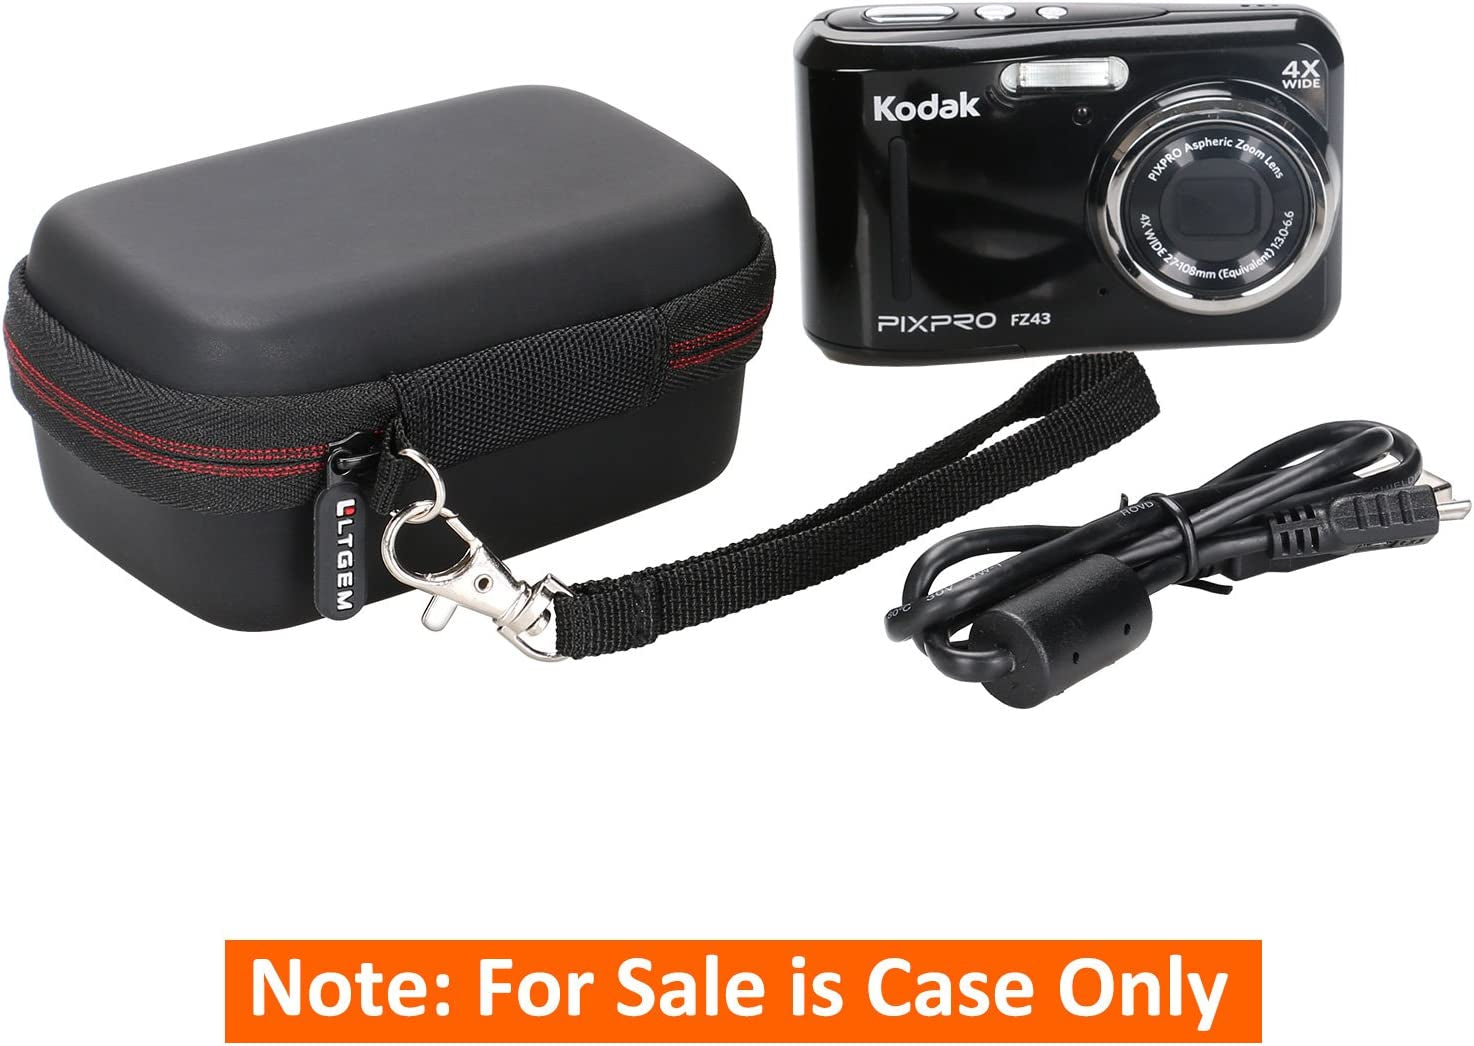 Camera Case for Digital Camera, Kodak PIXPRO Friendly Zoom FZ43/FZ45/FZ53/FZ55 /Canon Powershot ELPH 180/190 /Sony DSCW800/DSCW830 - Travel Protective Carrying Storage Bag